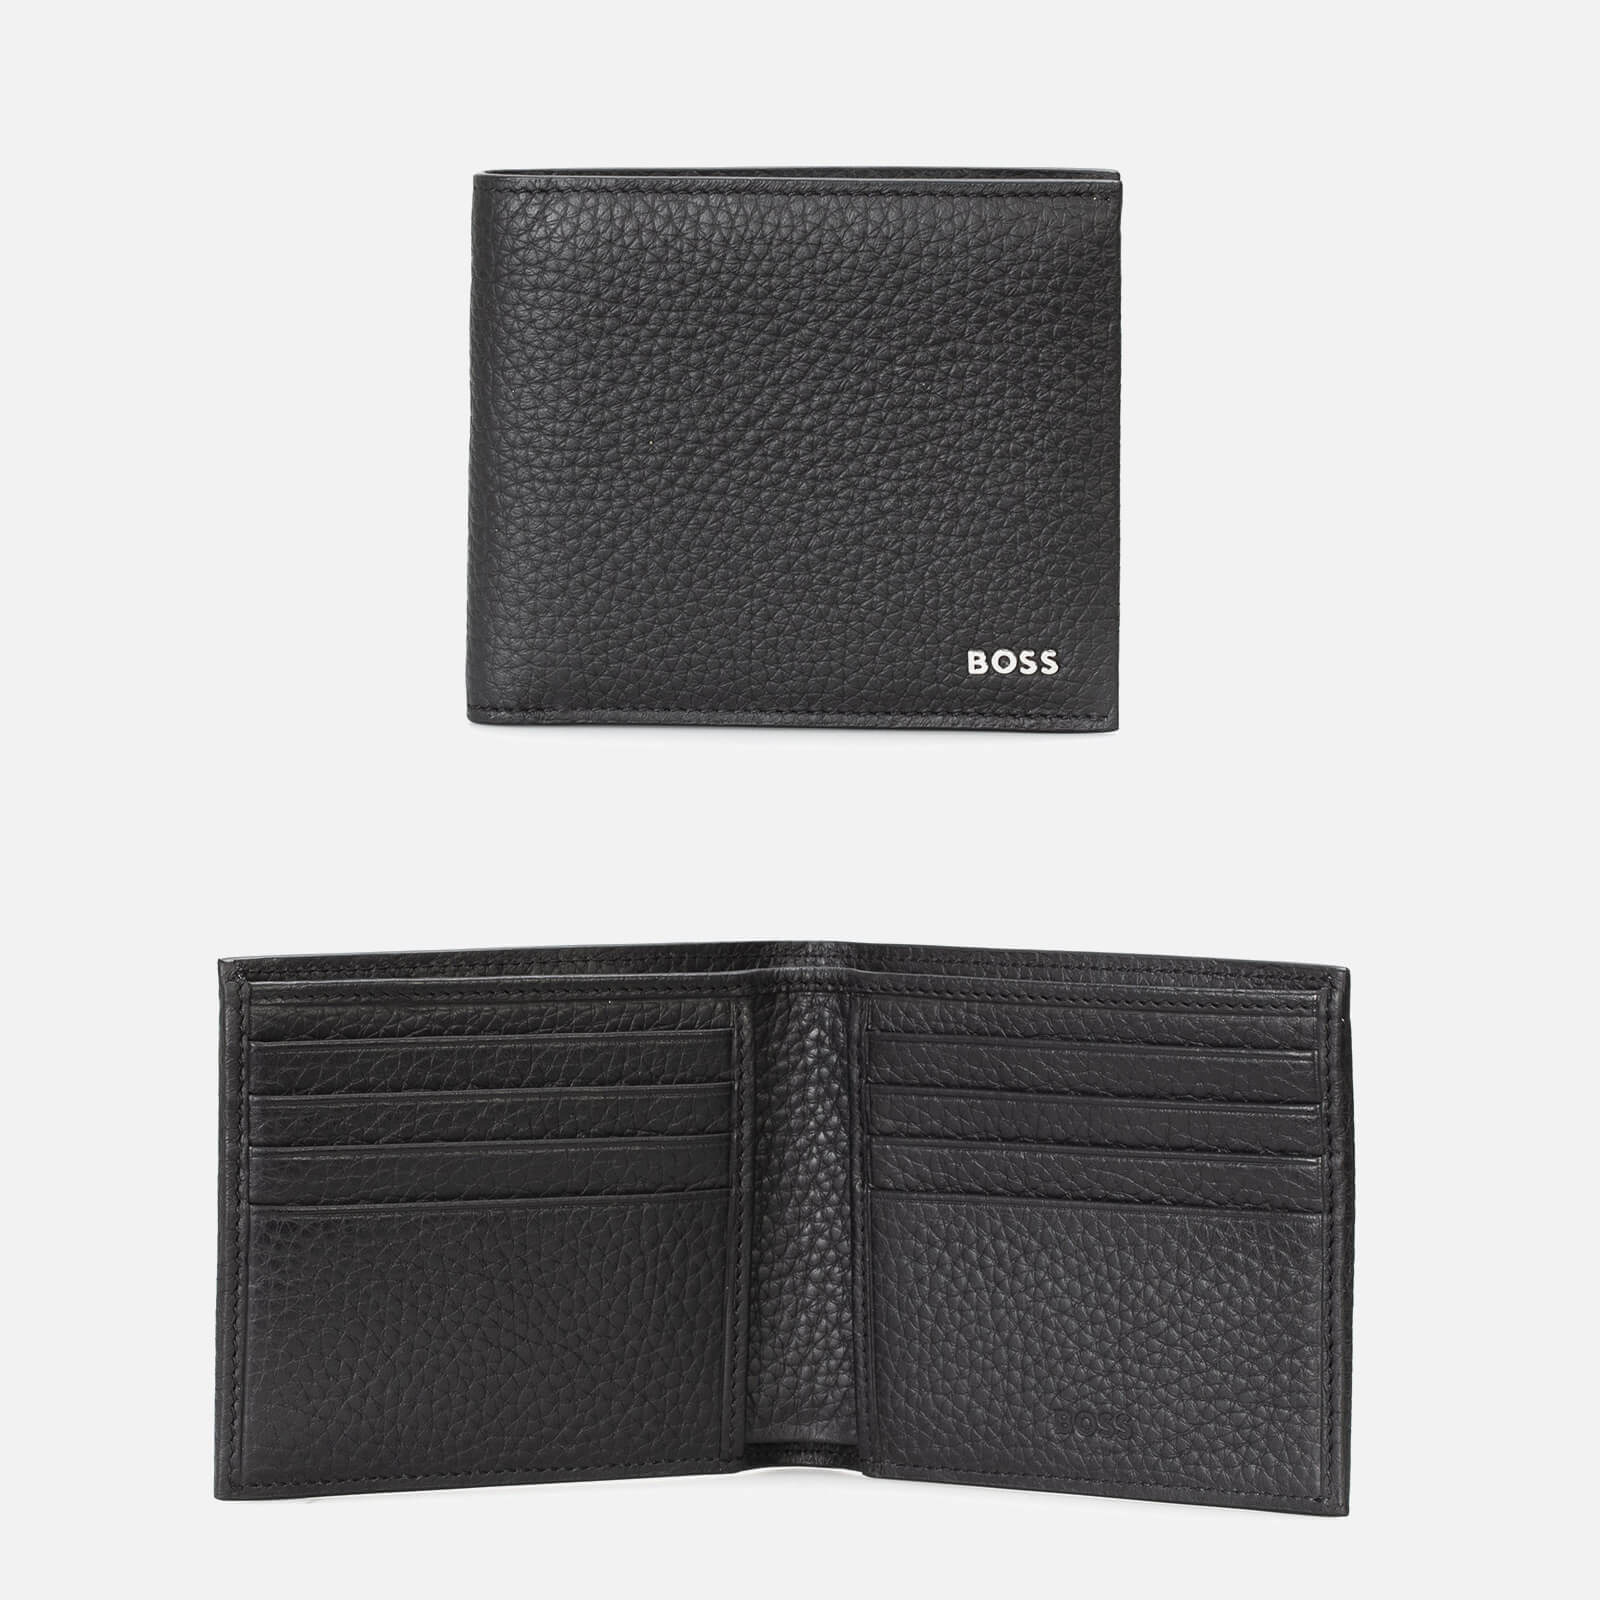 BOSS Crosstown Leather Wallet